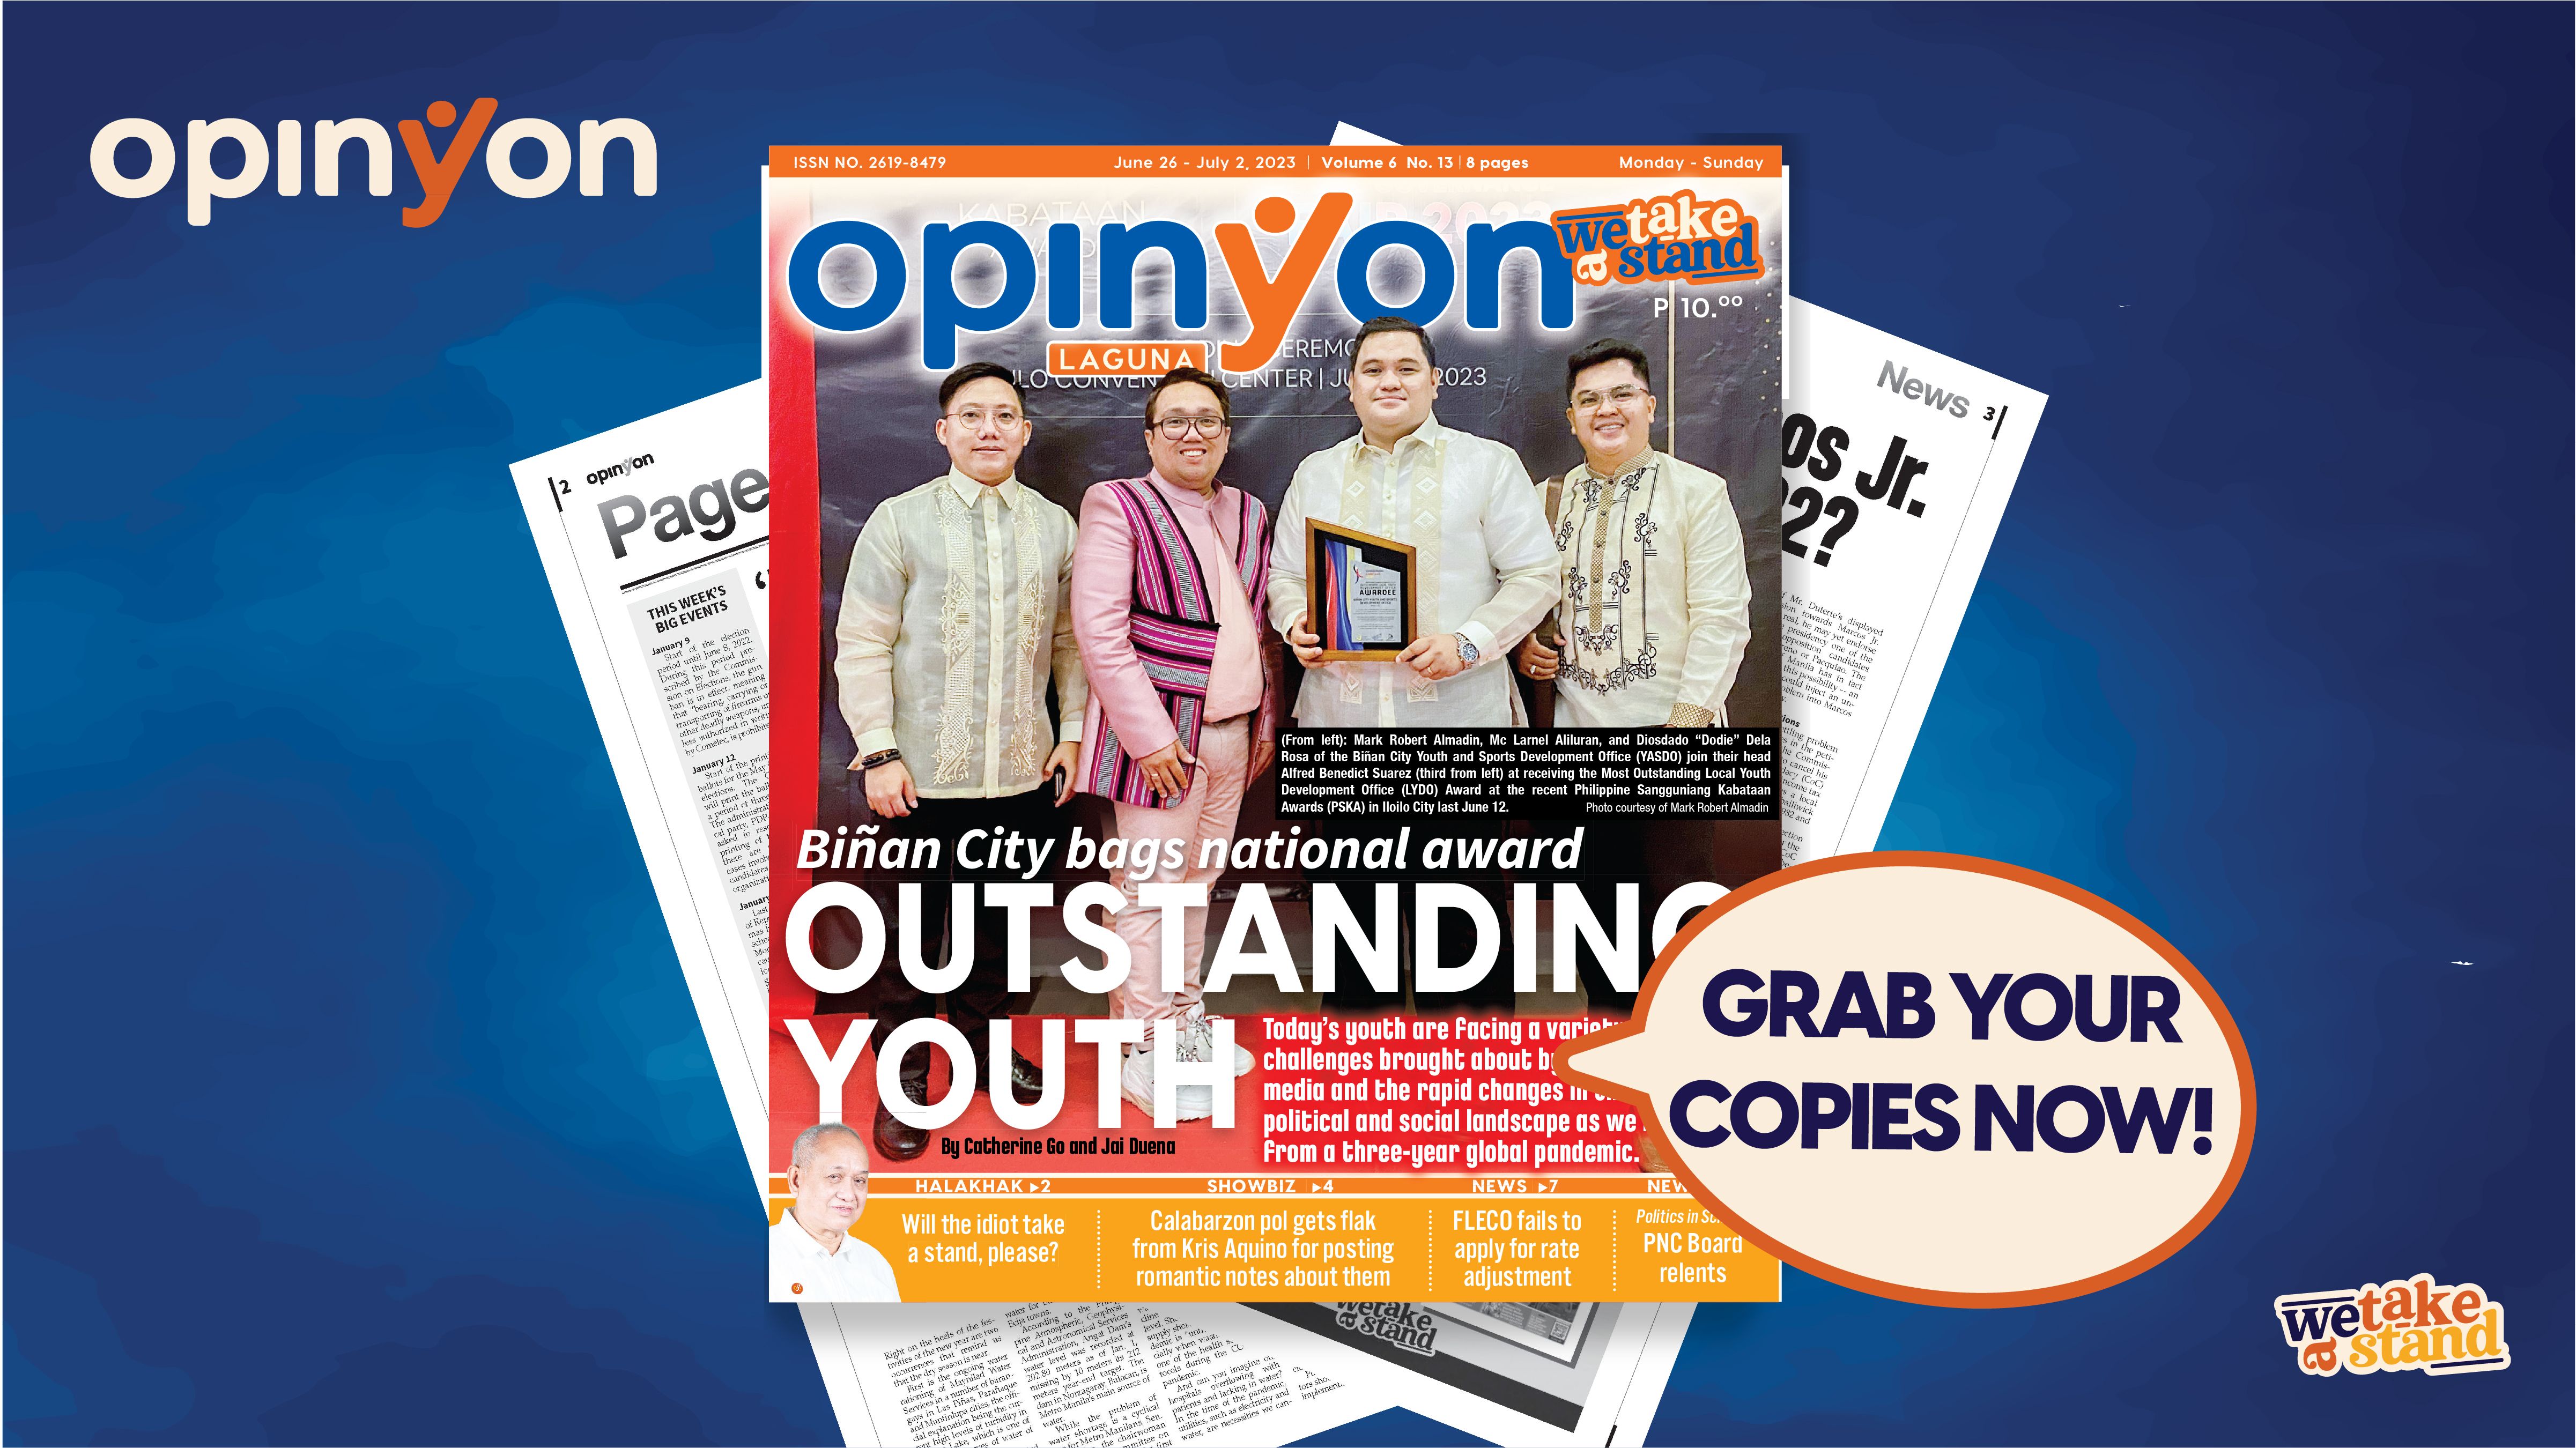 Biñan City bags national award OUTSTANDING YOUTH